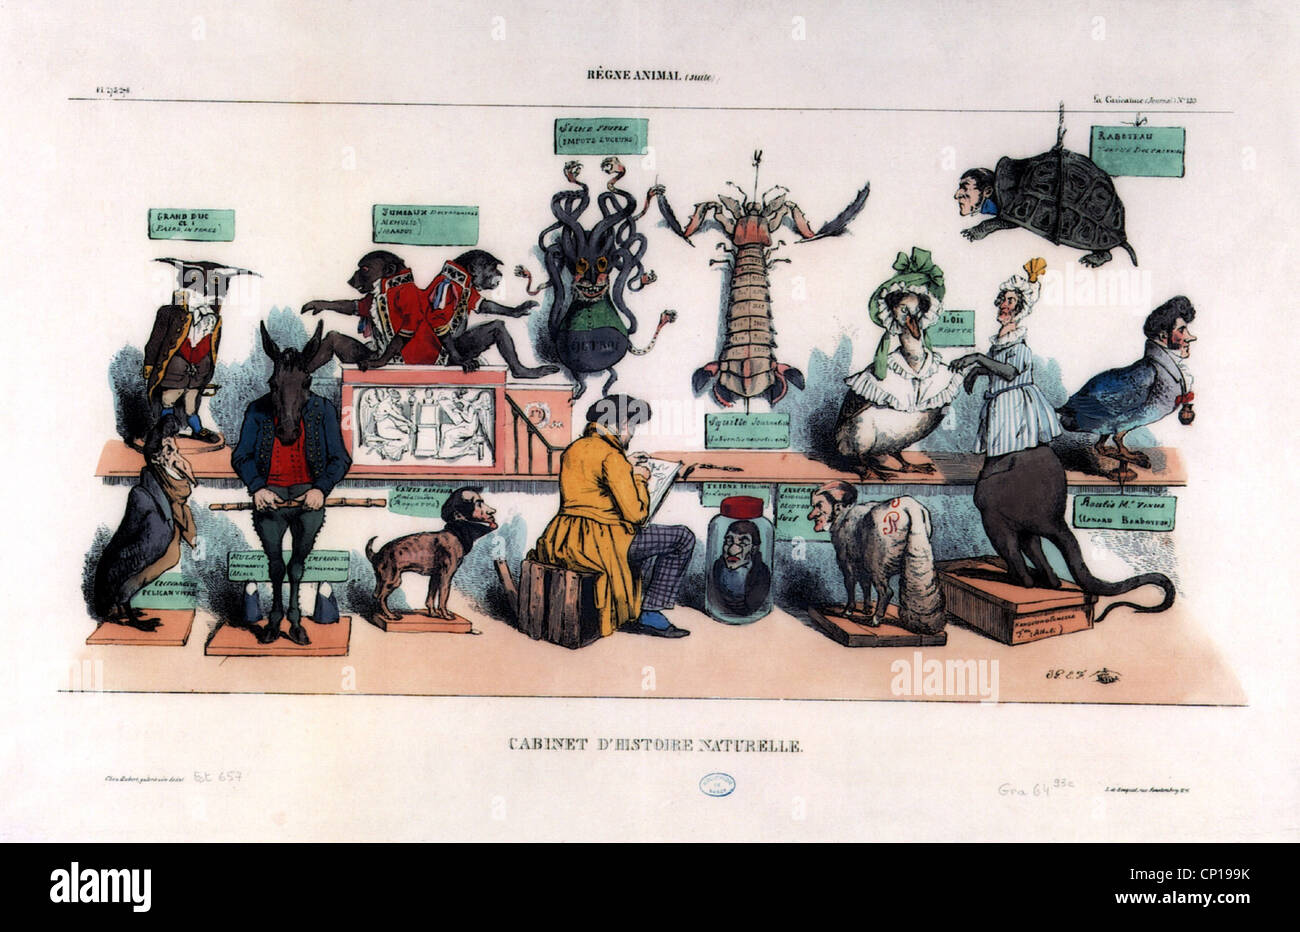 Géographie / voyages, France, politique, caricature 'Cabinet d'histoire naturelle', dessin de J. J. Grandville, 1833, l'artiste n'a pas d'auteur pour être effacé Banque D'Images